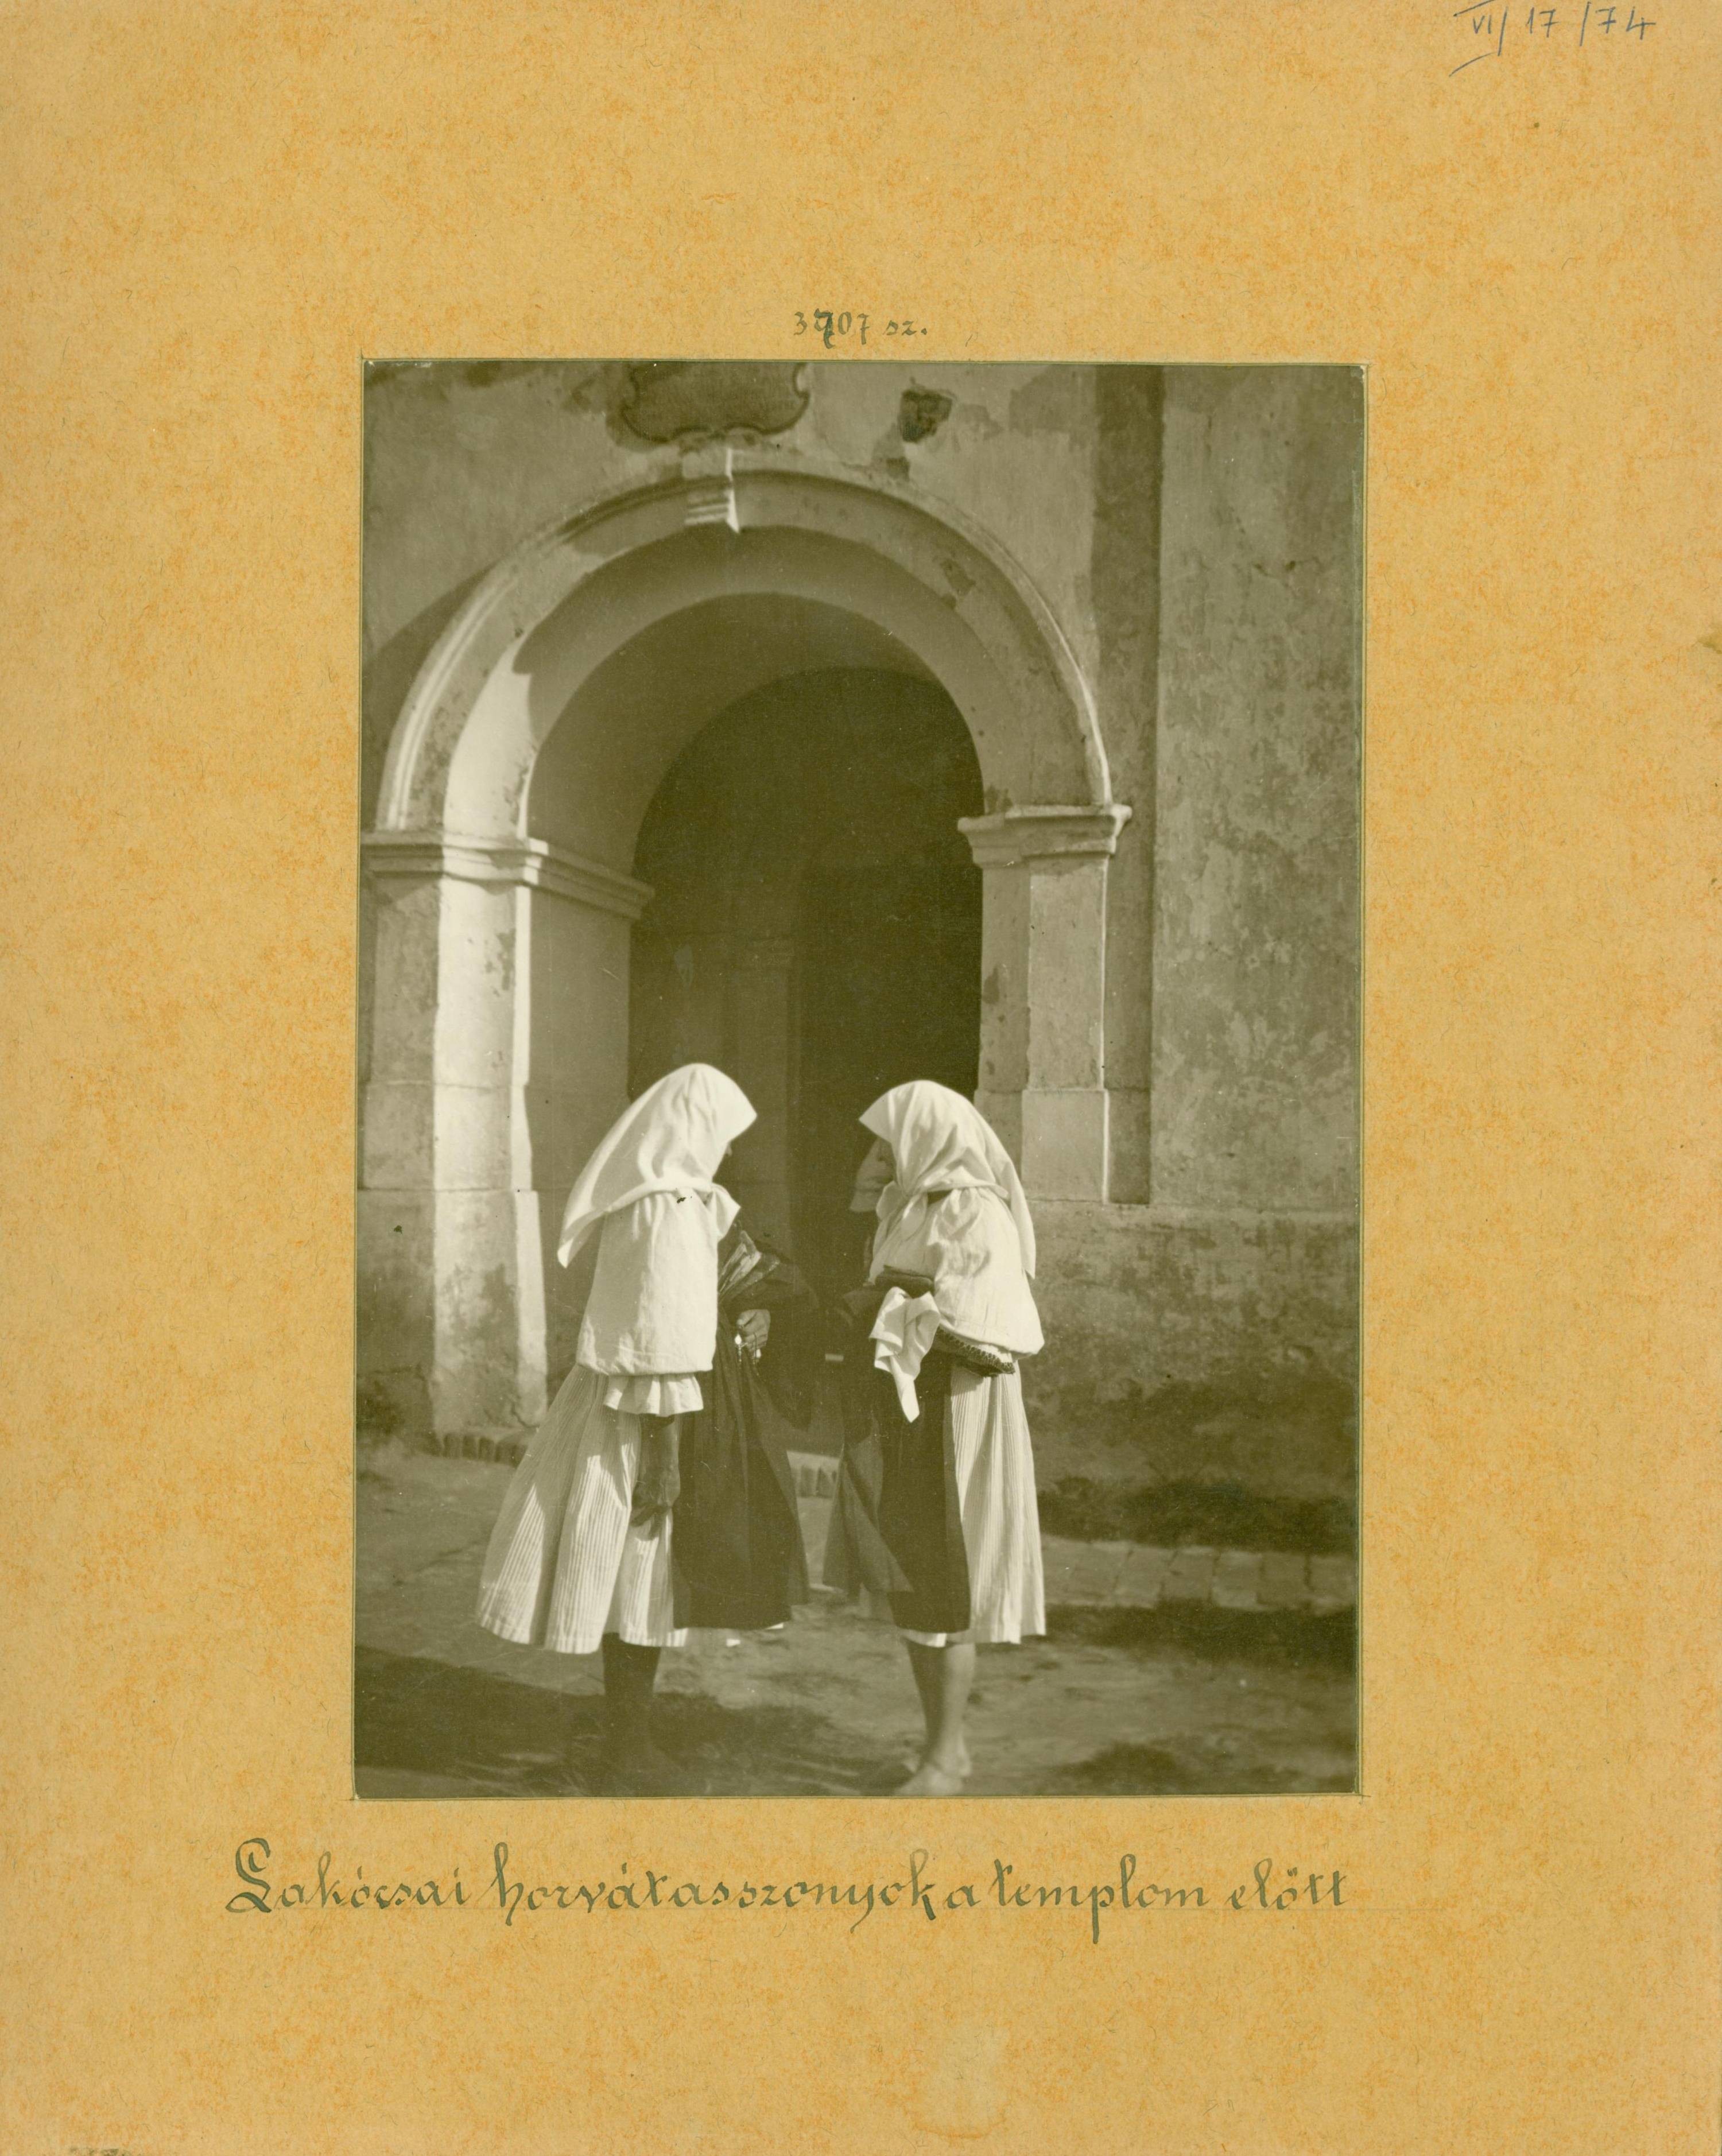 Lakócsai horvát asszonyok a templom előtt (Rippl-Rónai Múzeum RR-F)